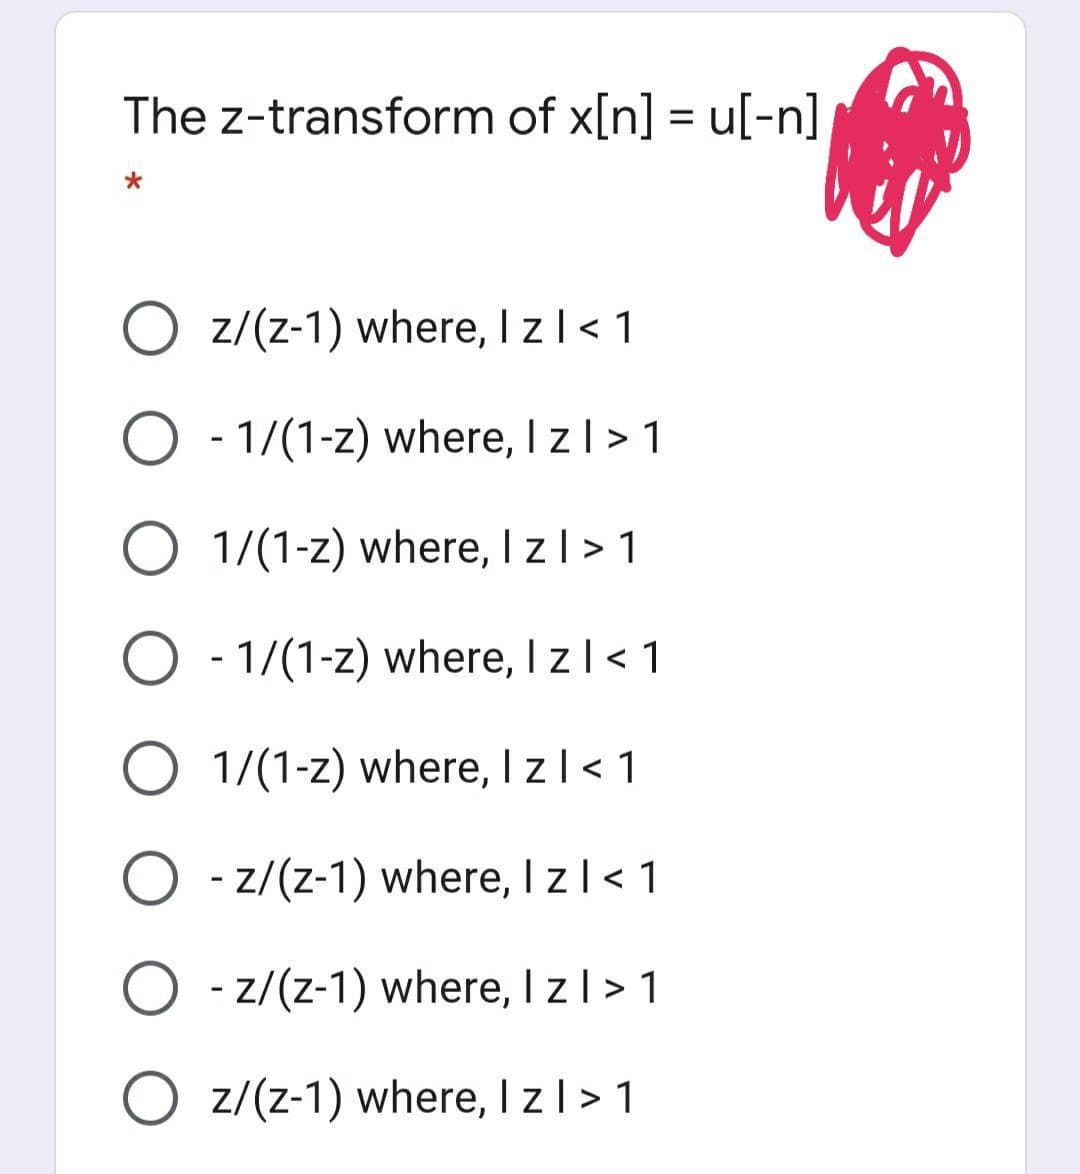 The z-transform of x[n] = u[-n]
O z/(z-1) where, I zl< 1
O - 1/(1-z) where, I zl> 1
O 1/(1-z) where, I zl > 1
O - 1/(1-z) where, I zl< 1
O 1/(1-z) where, I zl< 1
O - z/(z-1) where, I zl< 1
O - z/(z-1) where, I zl >1
O z/(z-1) where, I z| > 1
